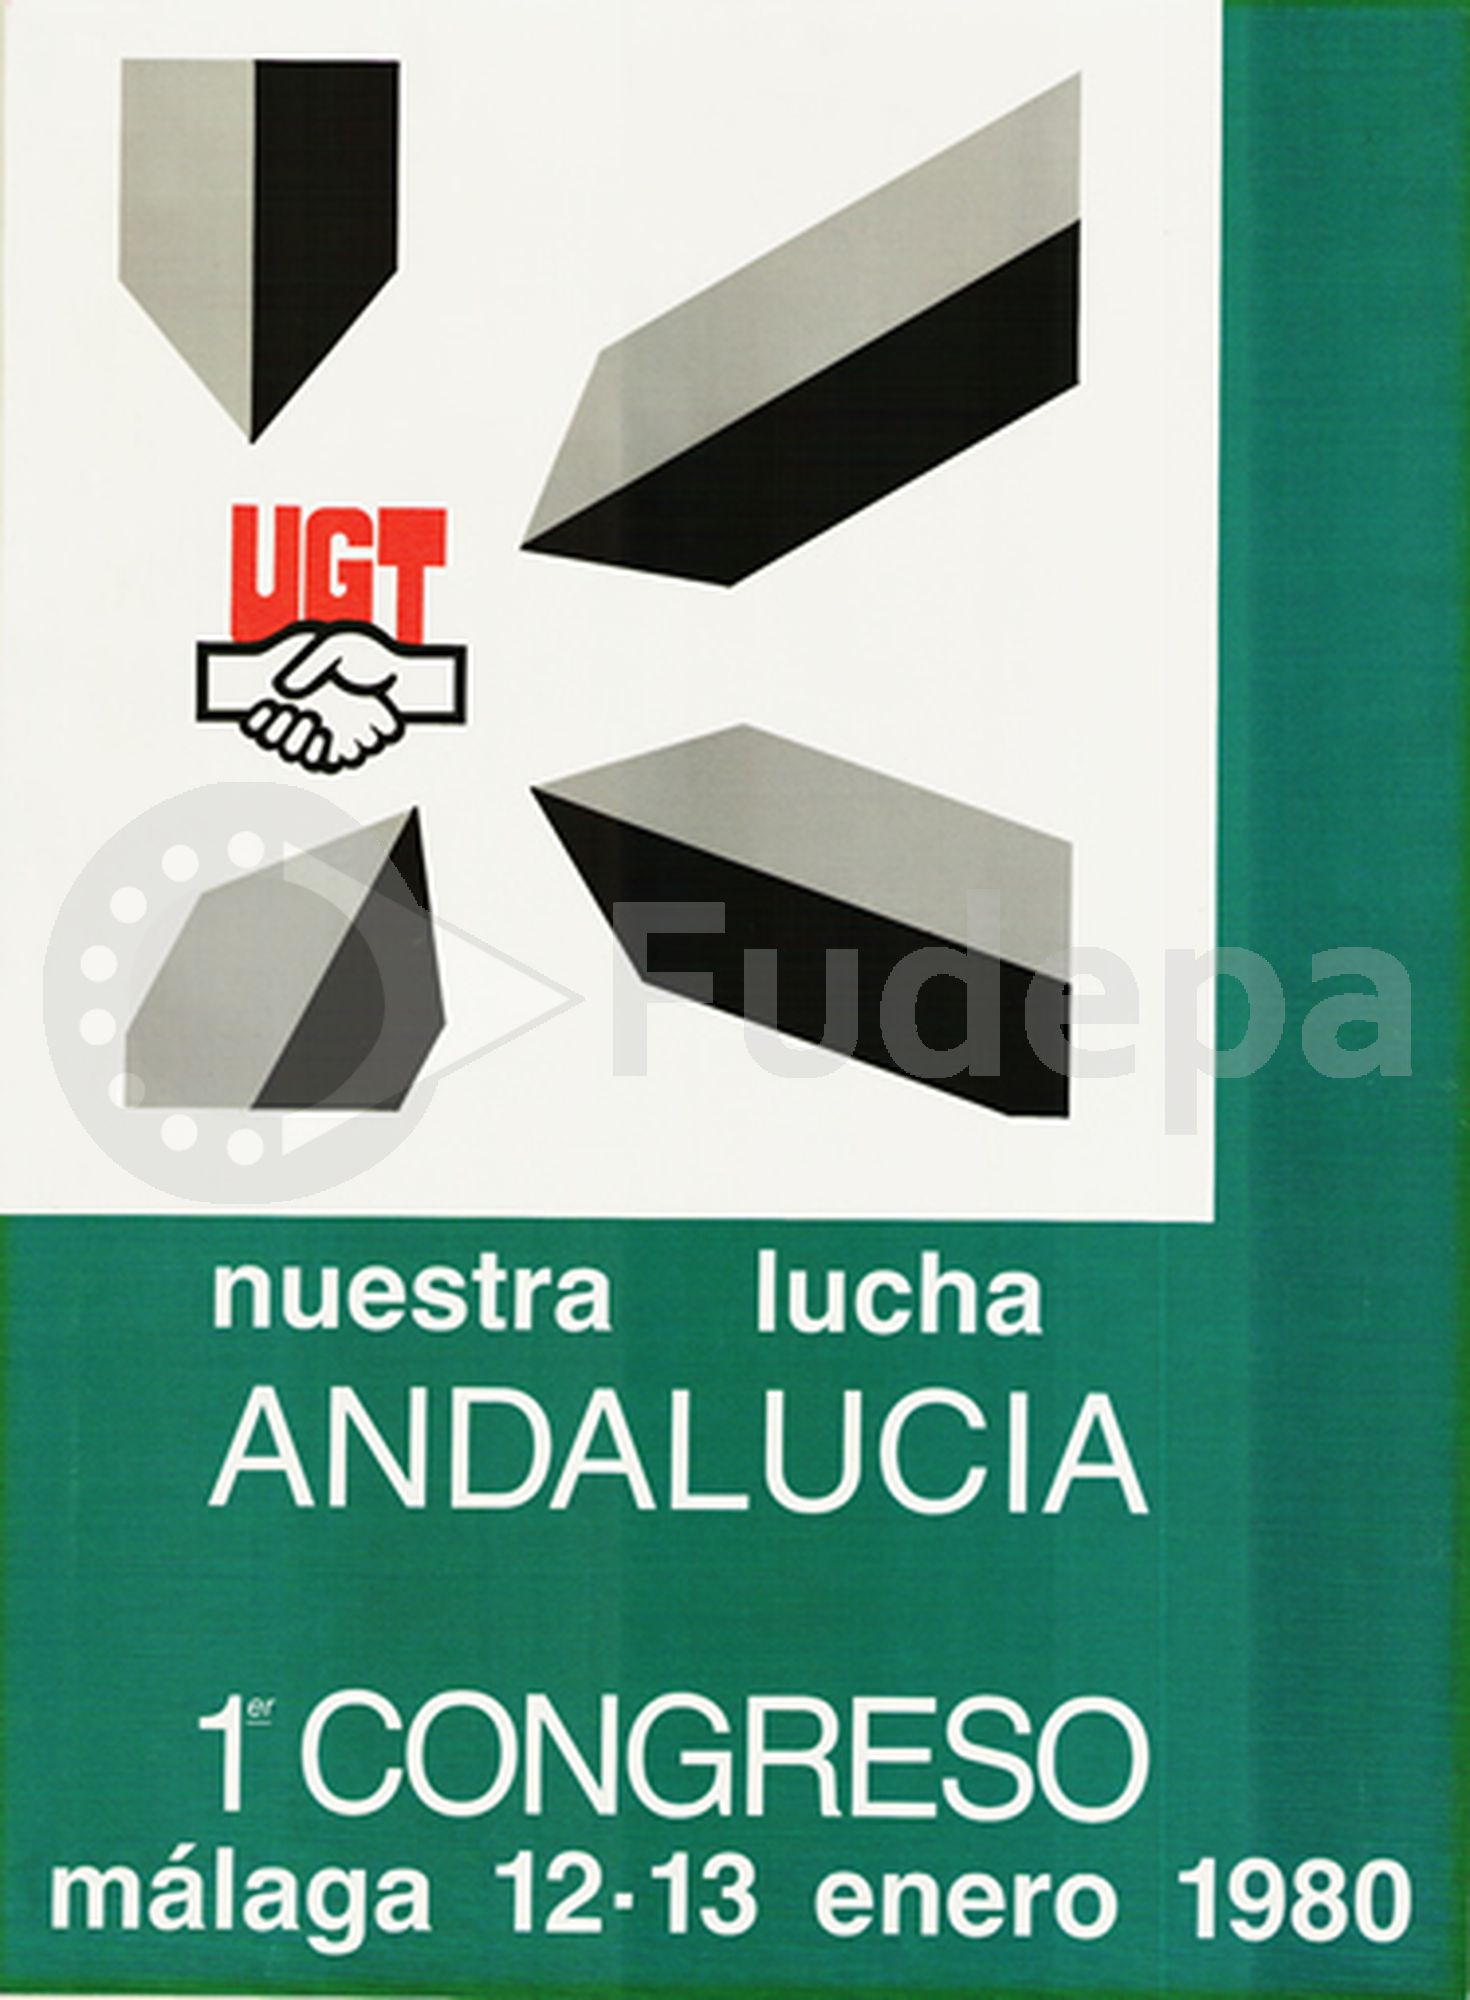 Paralelamente al proceso de creación de la Comunidad Autónoma se celebra el I Congreso de UGT Andalucía. 
(FUDEPA_AHUGTA)